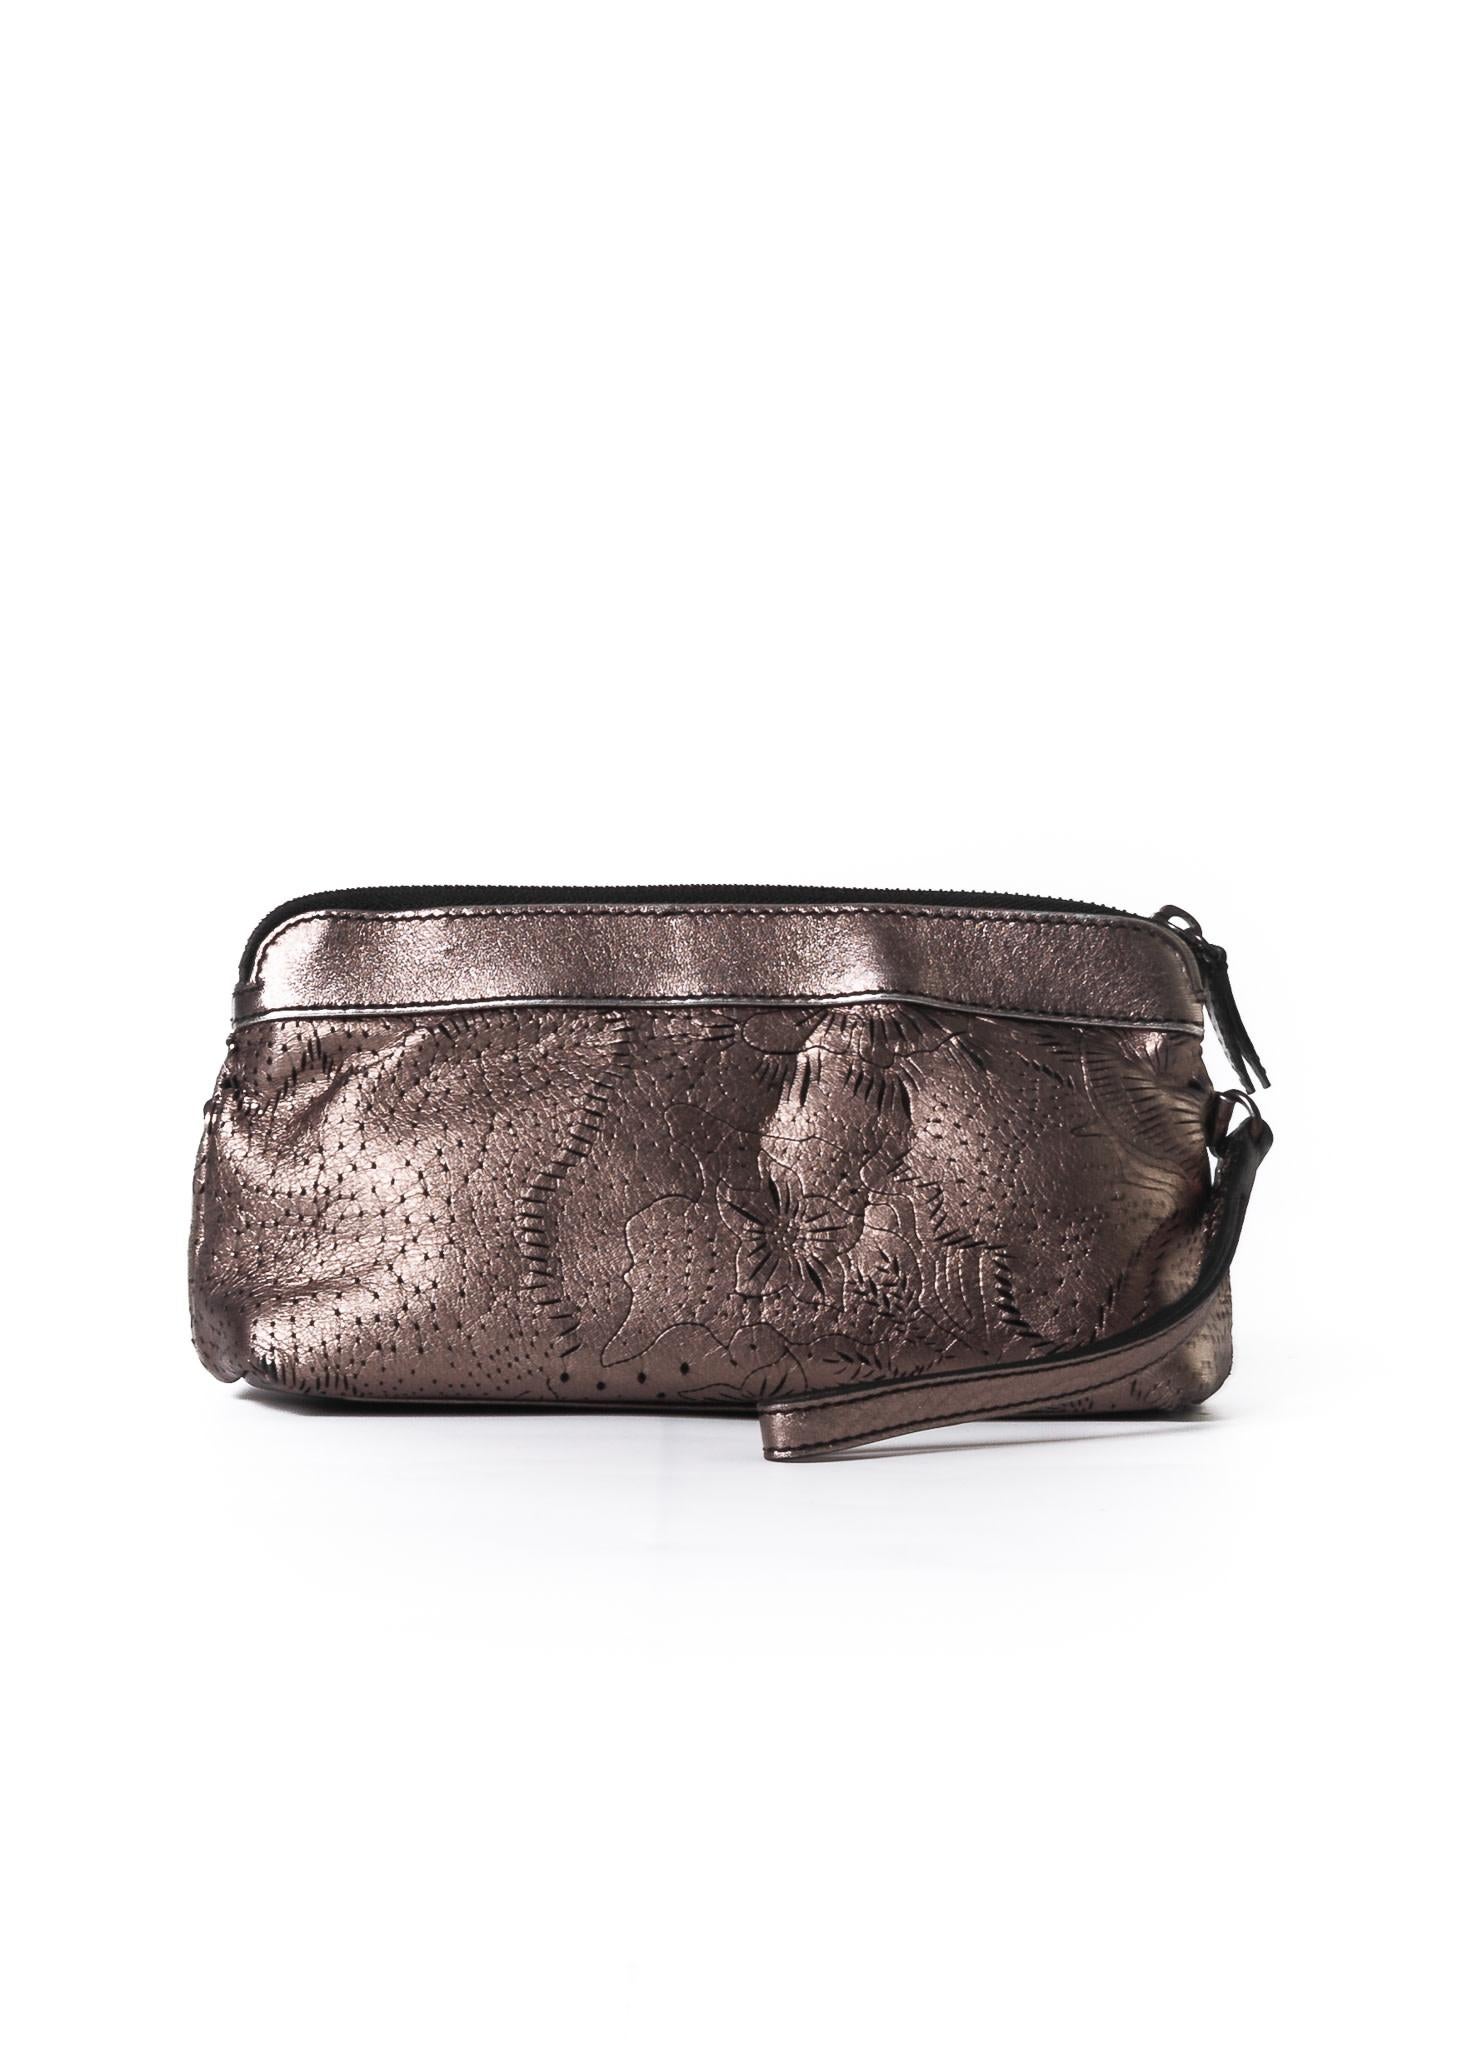 Diese bezaubernde Burberry Metallic Silver Floral Perforated Leather Wristlet Bag ist perfekt, um Ihre weiblichen Essentials stilvoll zu transportieren. Es besteht aus superschickem, lasergeschnittenem, dunklem Nickelleder mit einem hübschen